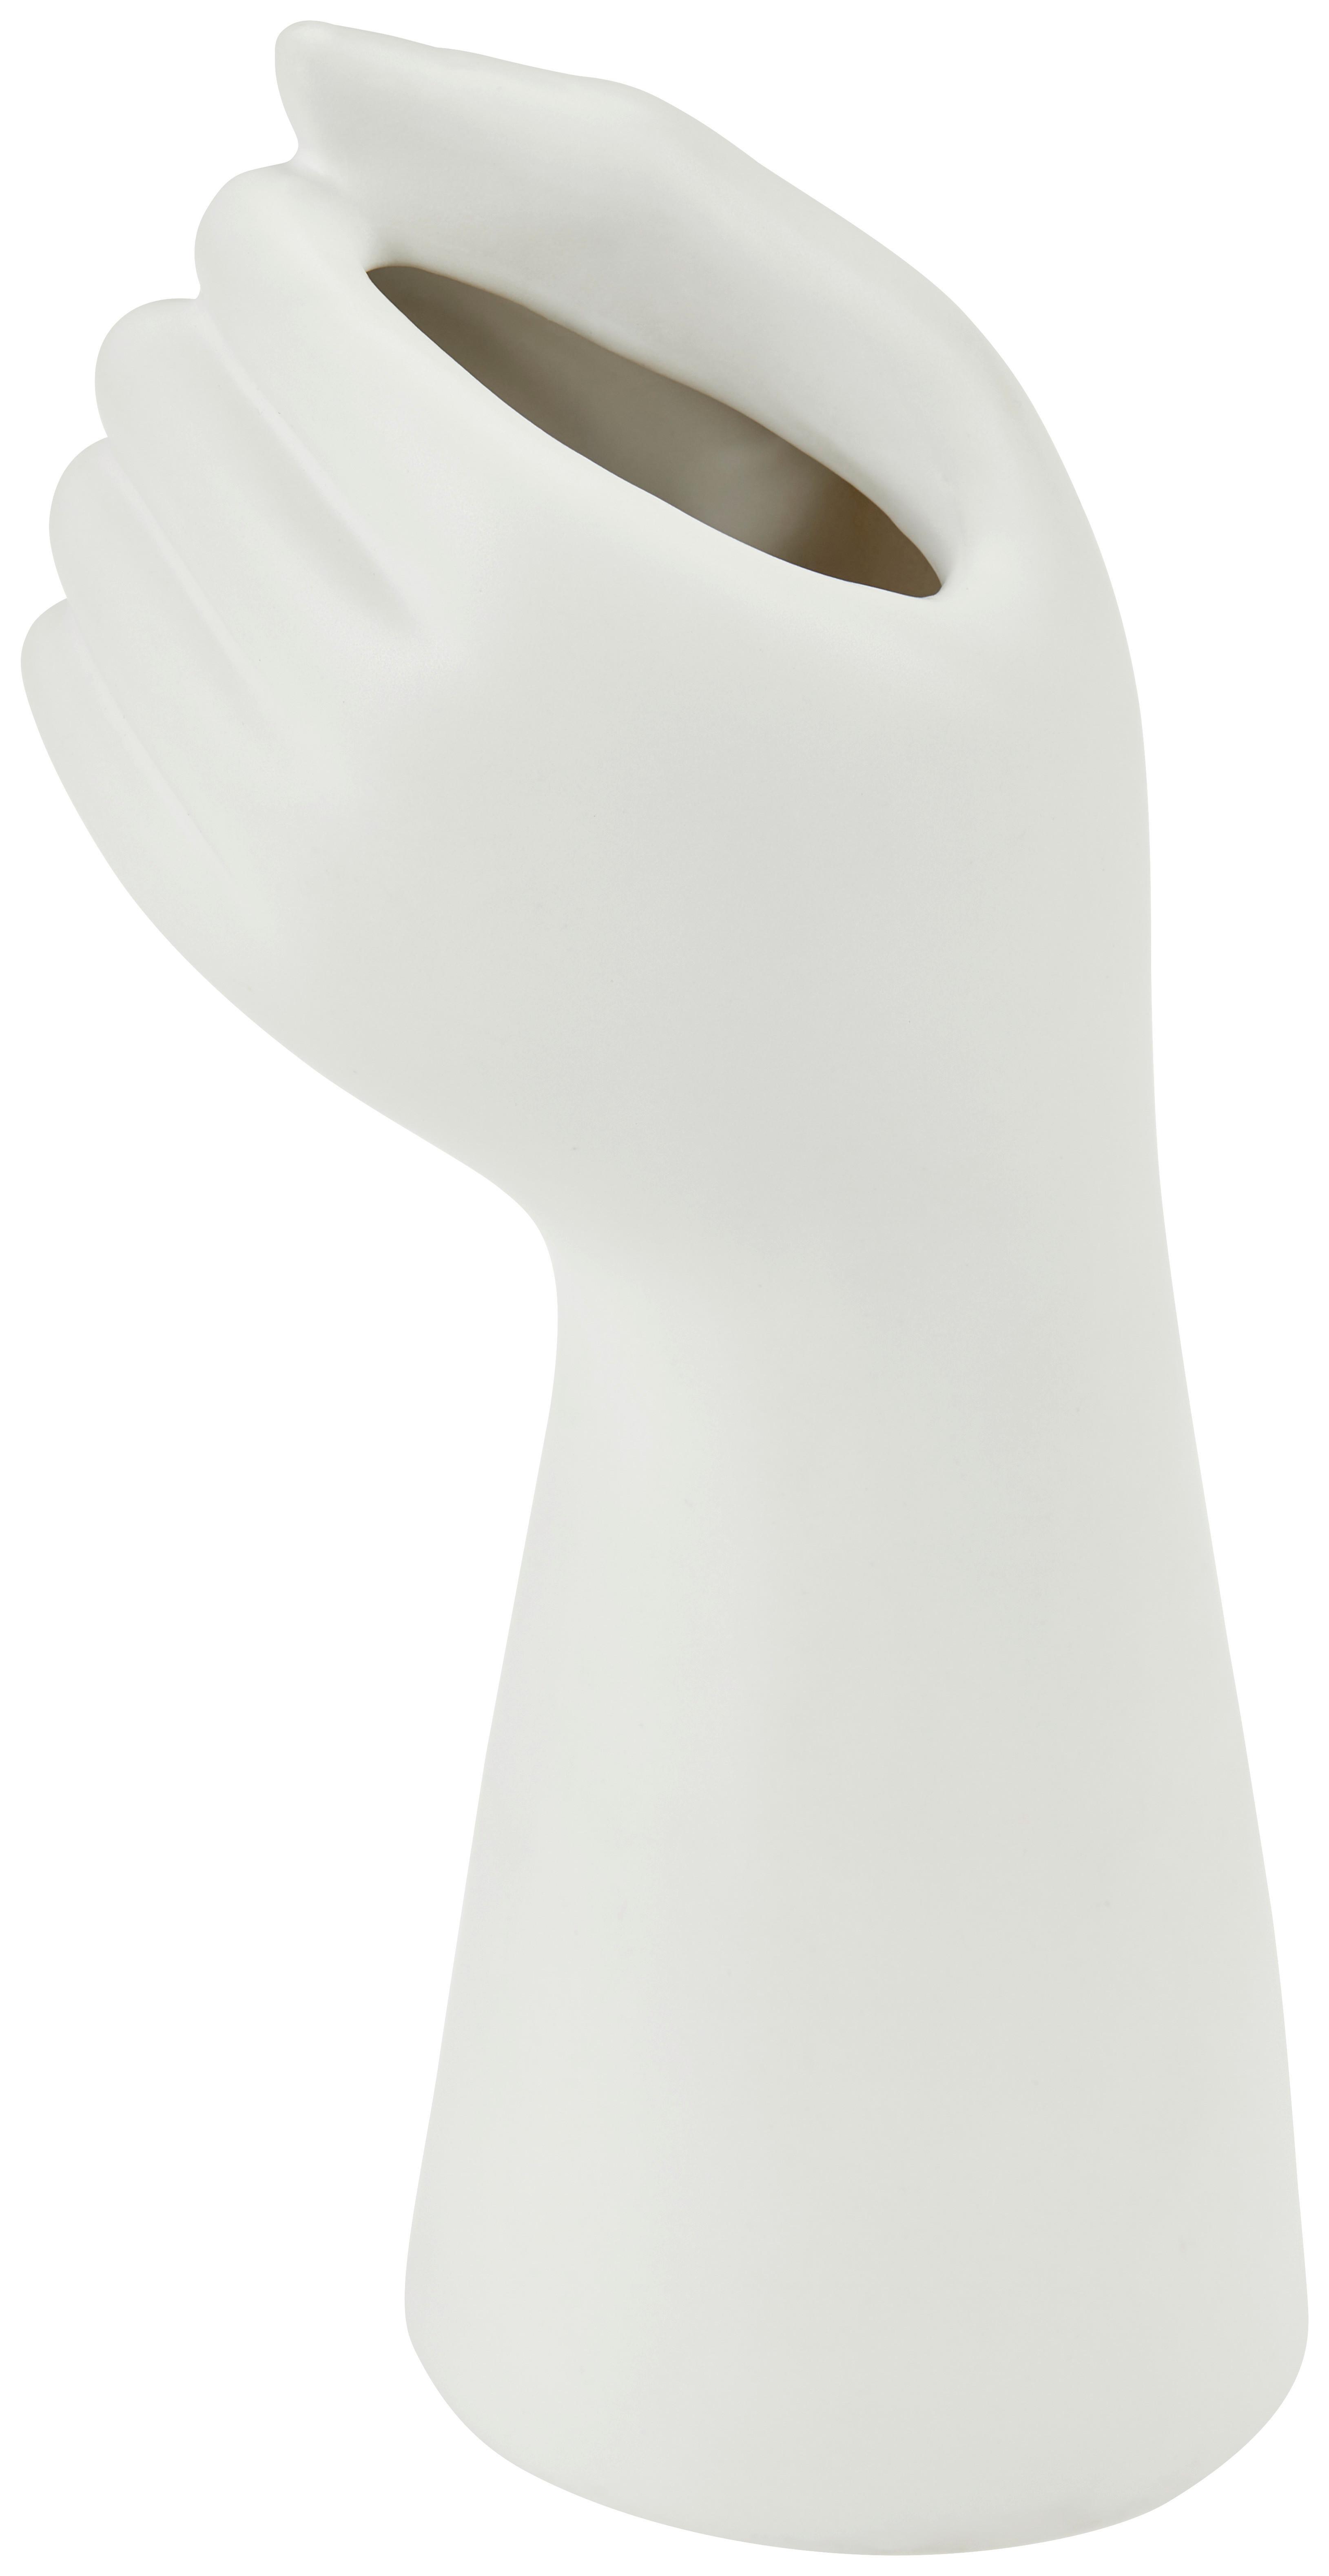 Vase Shane Porzellan Weiß H: 21,5 cm - Weiß, MODERN, Keramik (9/7,5/21,5cm) - Luca Bessoni